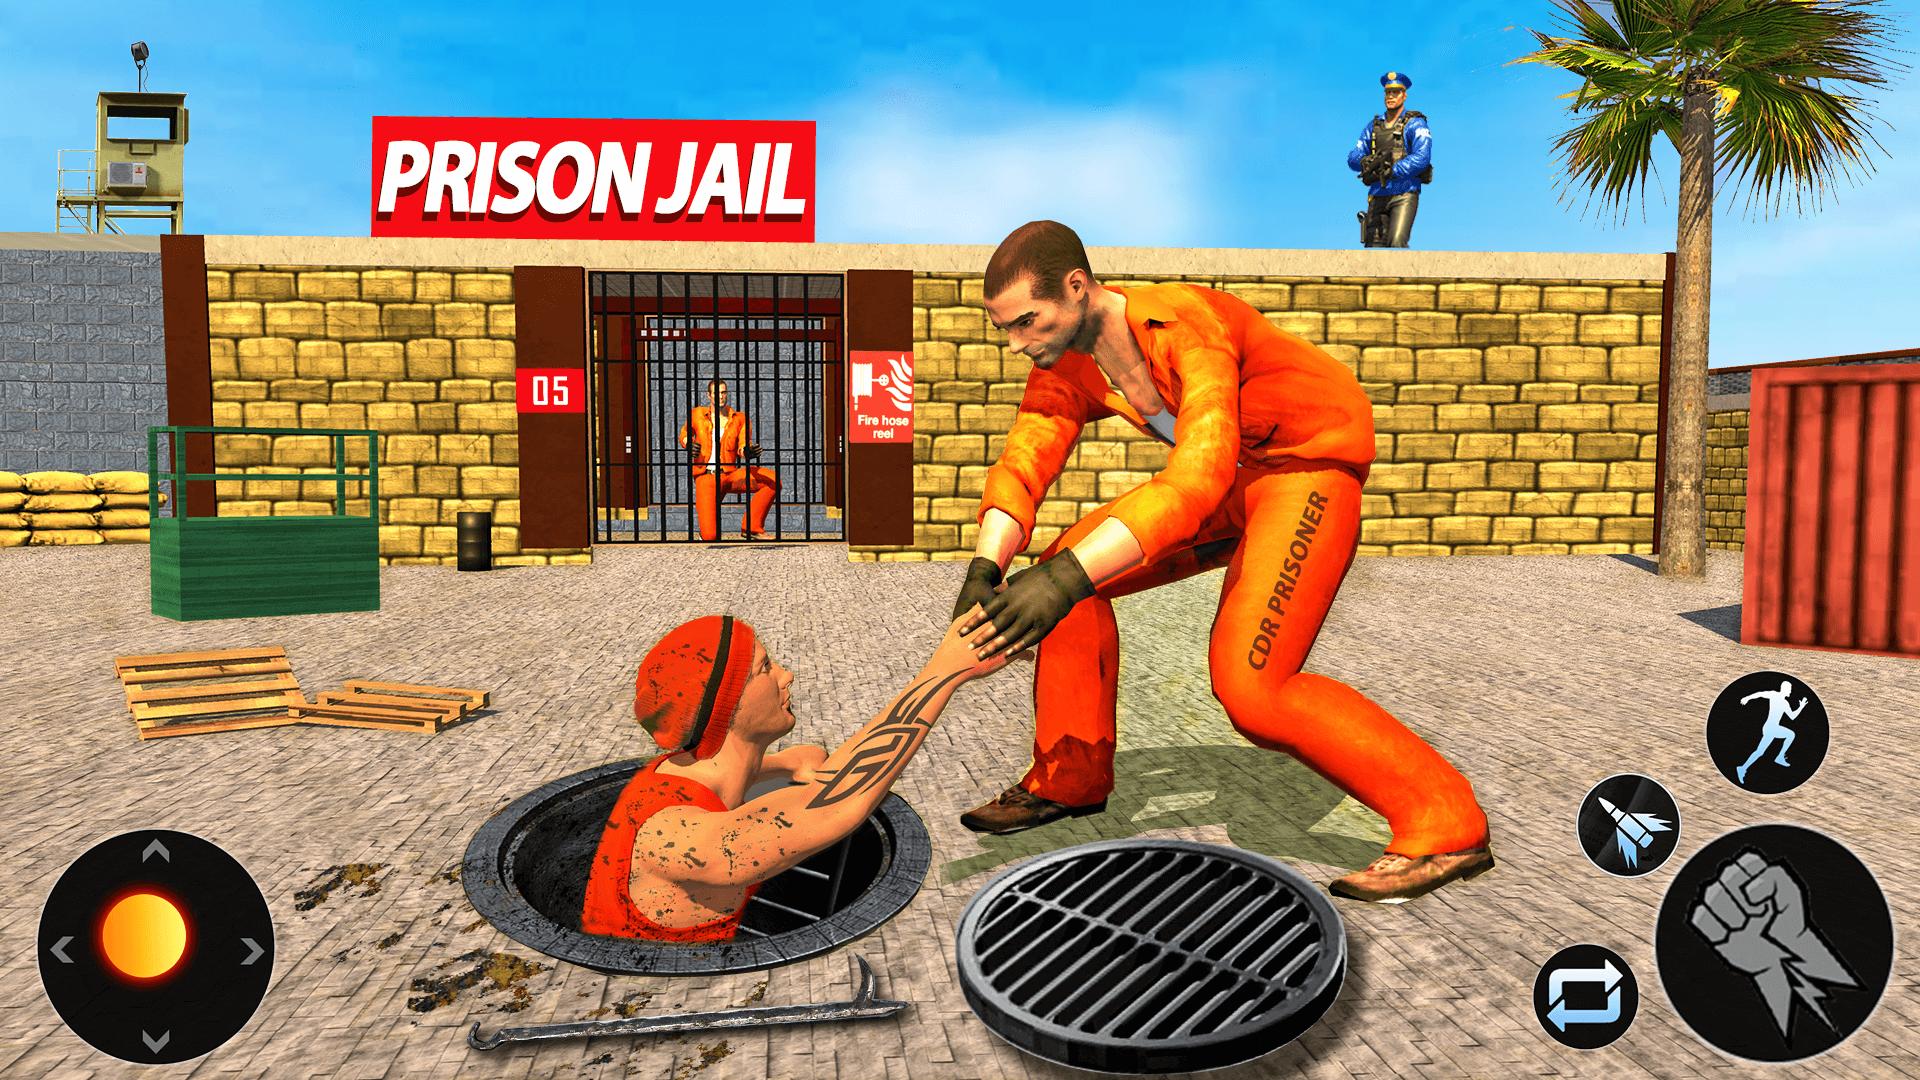 Stickman Prison Escape - Jail Breakout Free Download